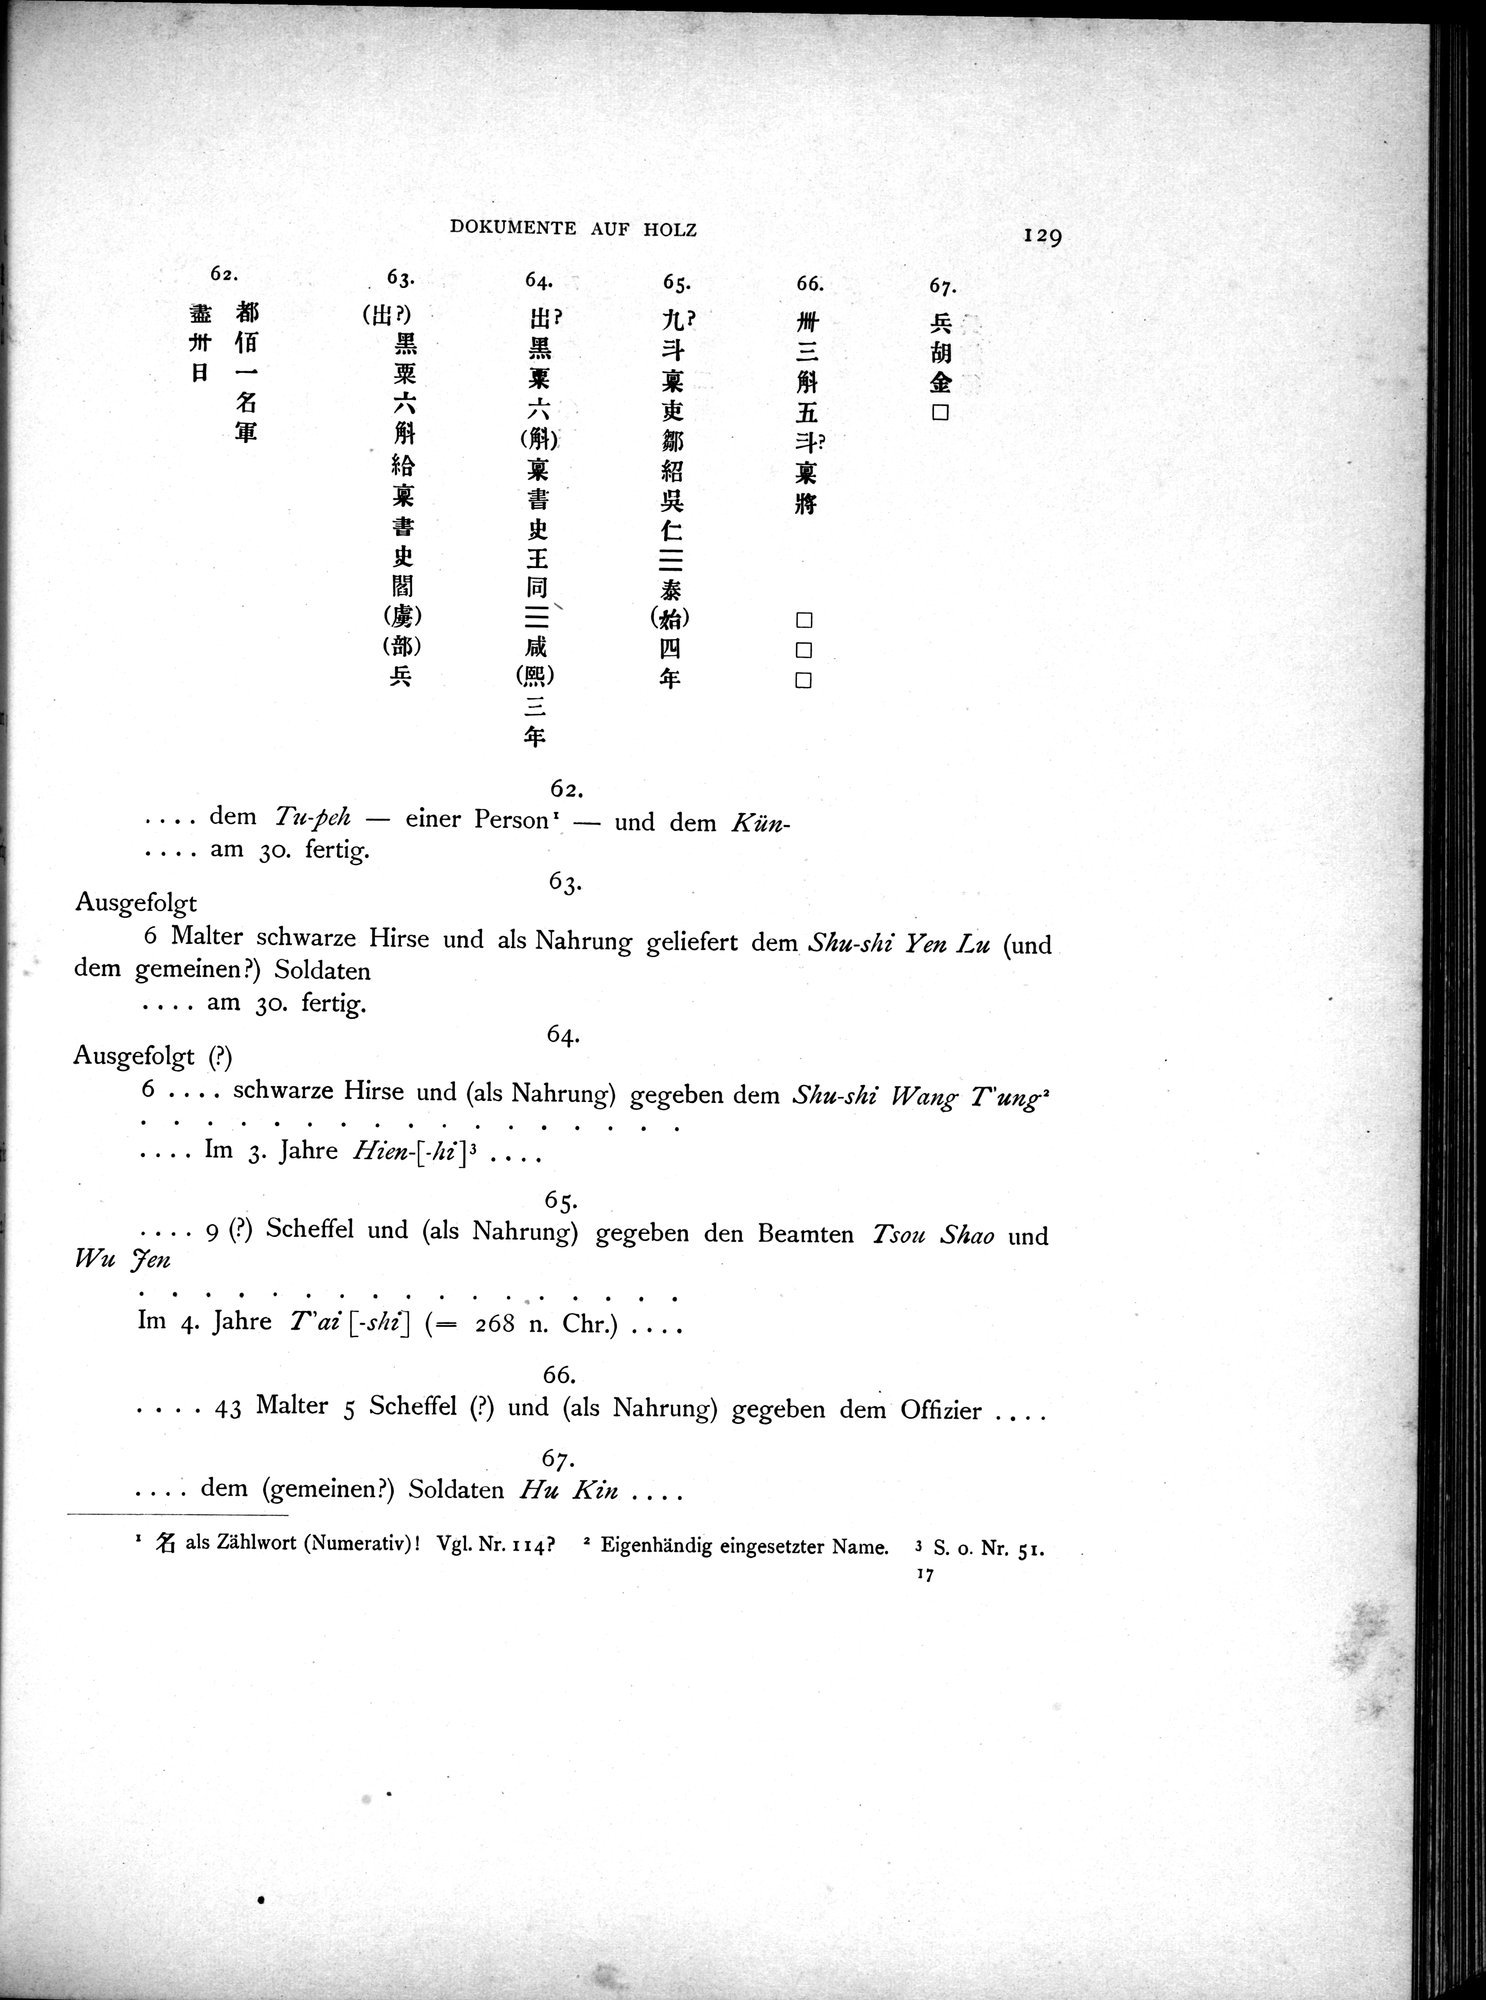 Die Chinesischen Handschriften- und sonstigen Kleinfunde Sven Hedins in Lou-lan : vol.1 / Page 153 (Grayscale High Resolution Image)